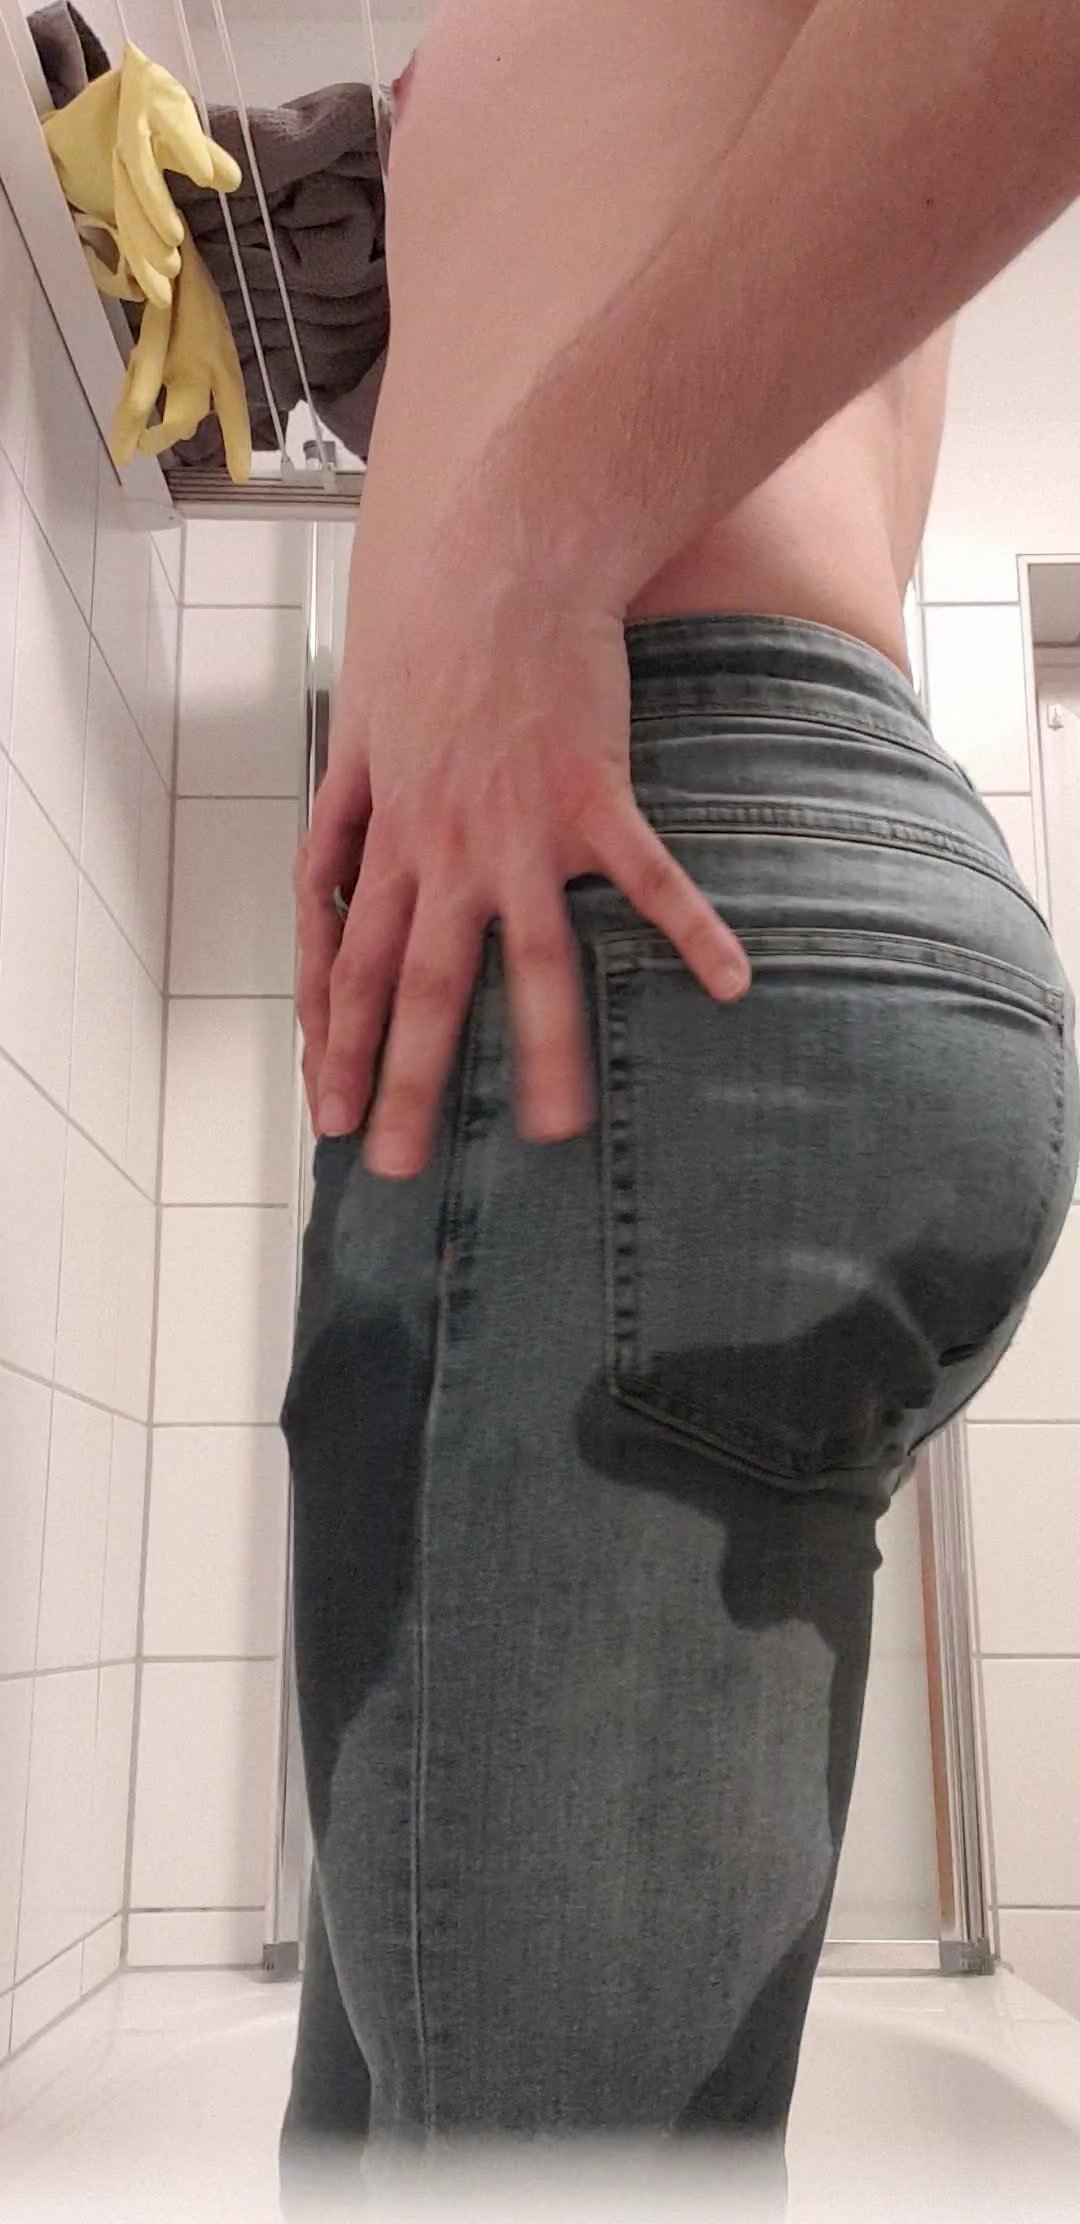 Pee in Slim Jeans